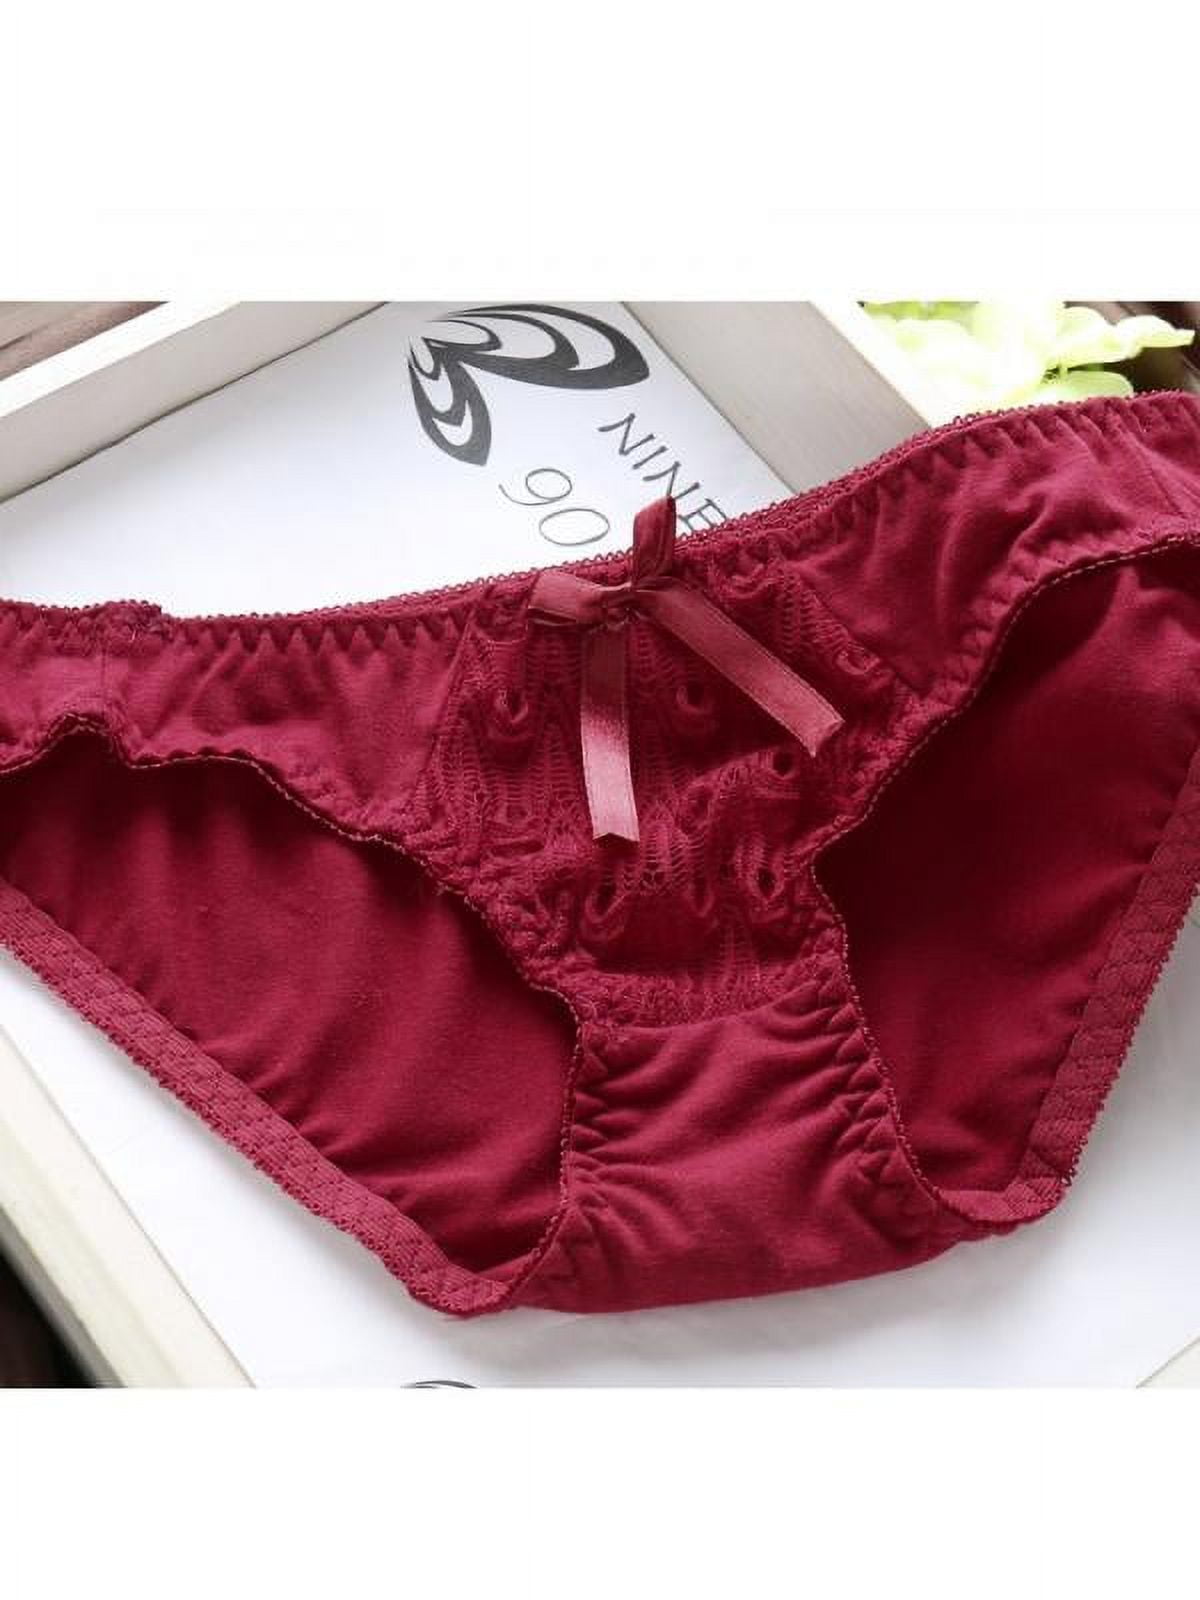 VICOODA Women's 2 Piece Lingerie Set for Honeymoon Boudoir Top Bra Pants  Underwear Set Lace Flowers Racy Sleepwear Set